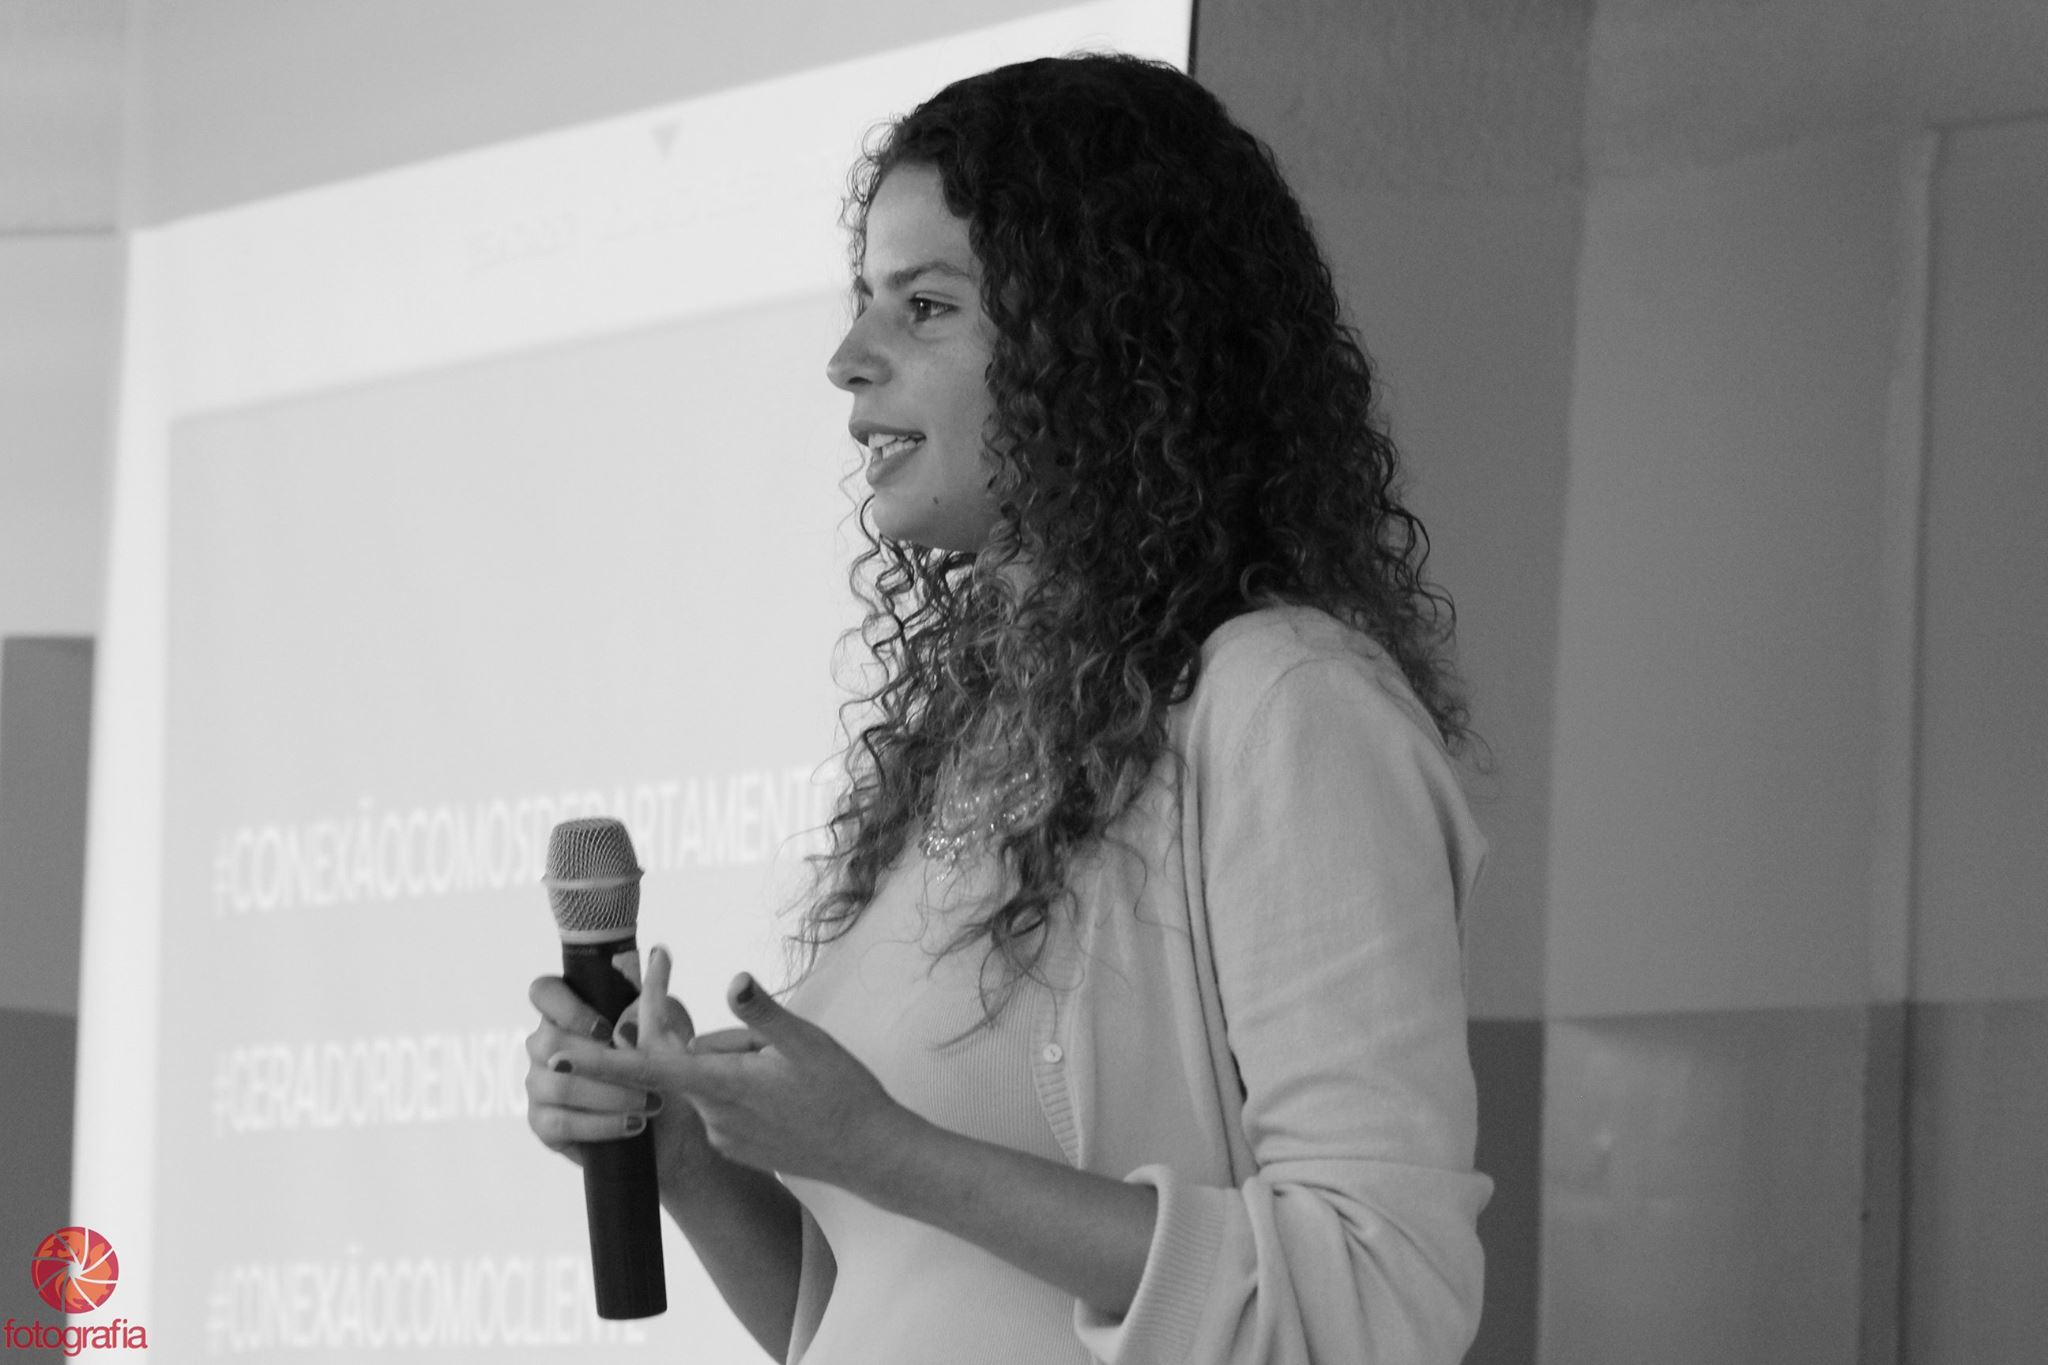 Iandra Siqueira na 21ª Semana de Comunicação da Unoeste